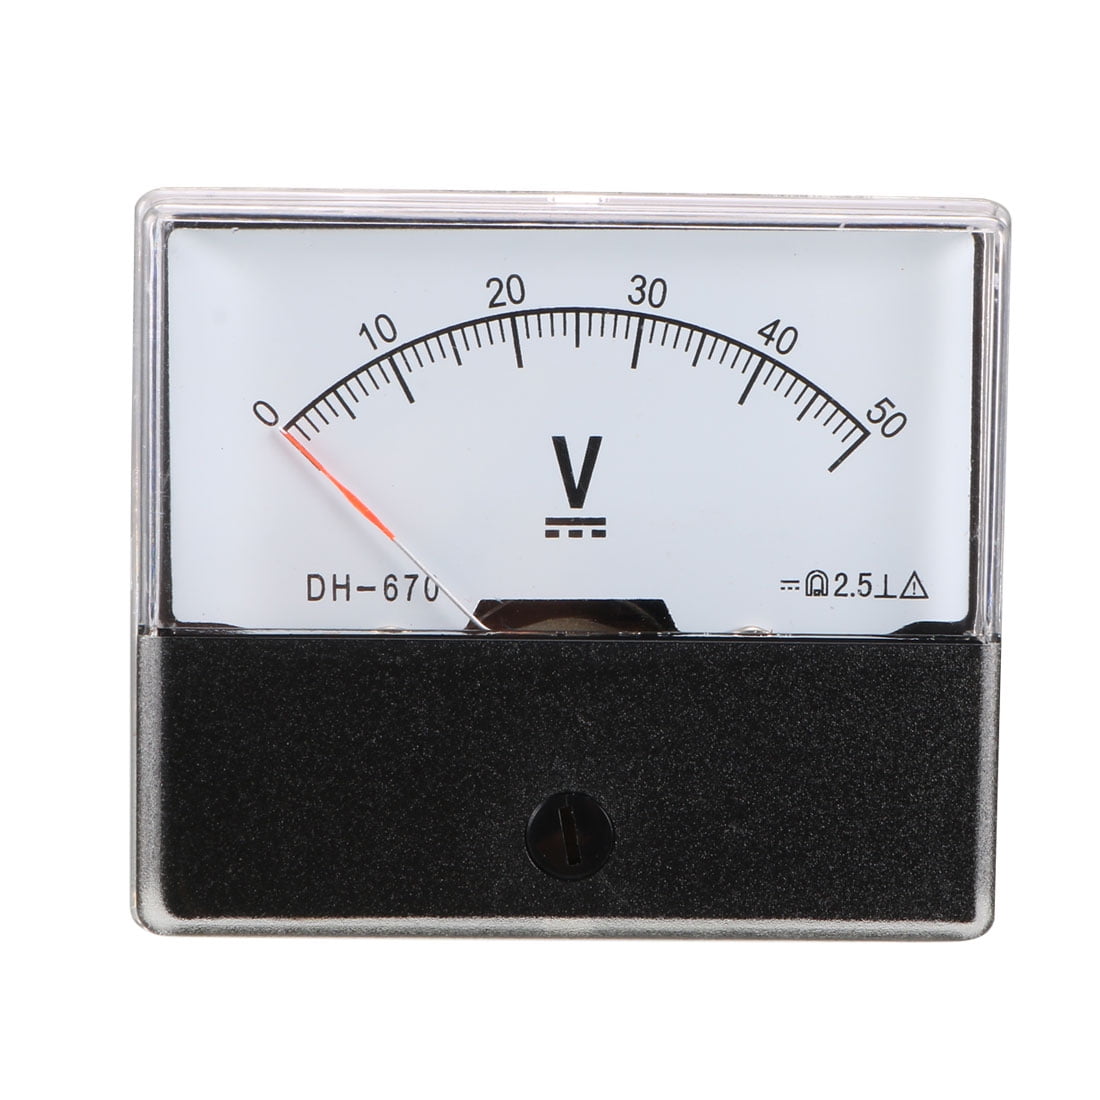 New DC 0-50V Analog Volt Voltage Voltmeter Panel Meter 